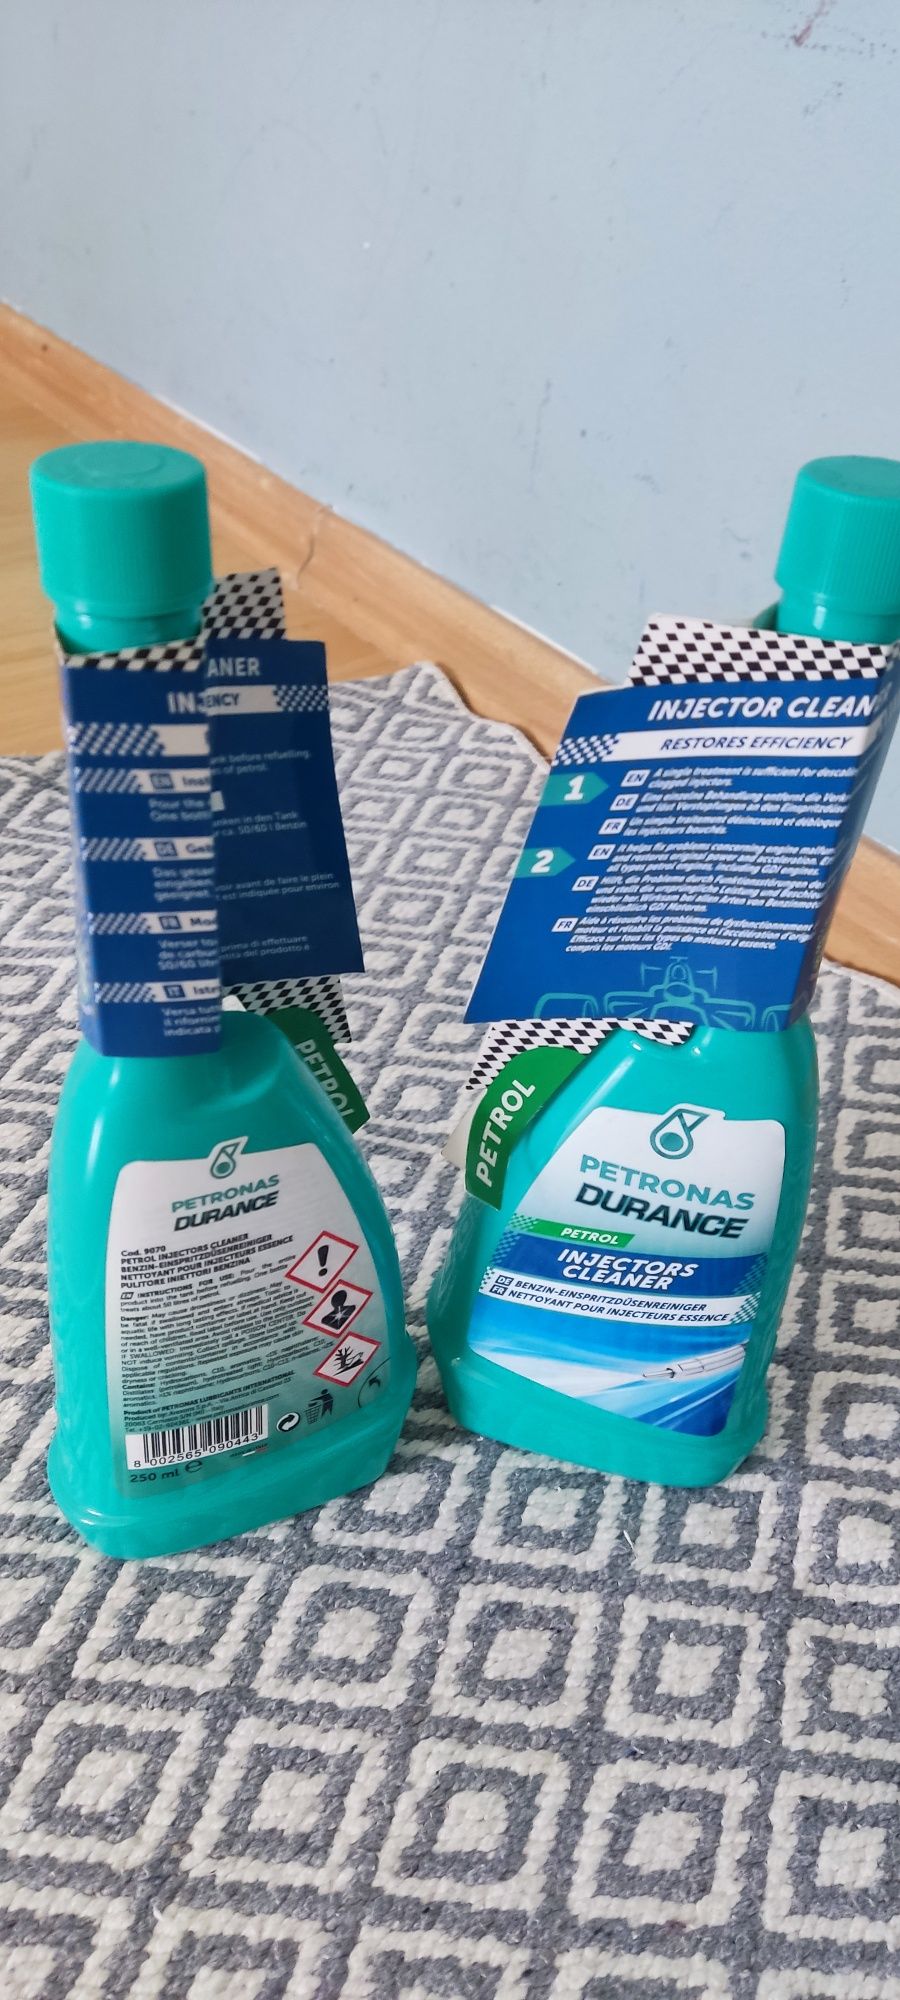 Soluție pentru curățarea injectoarelor Petronas